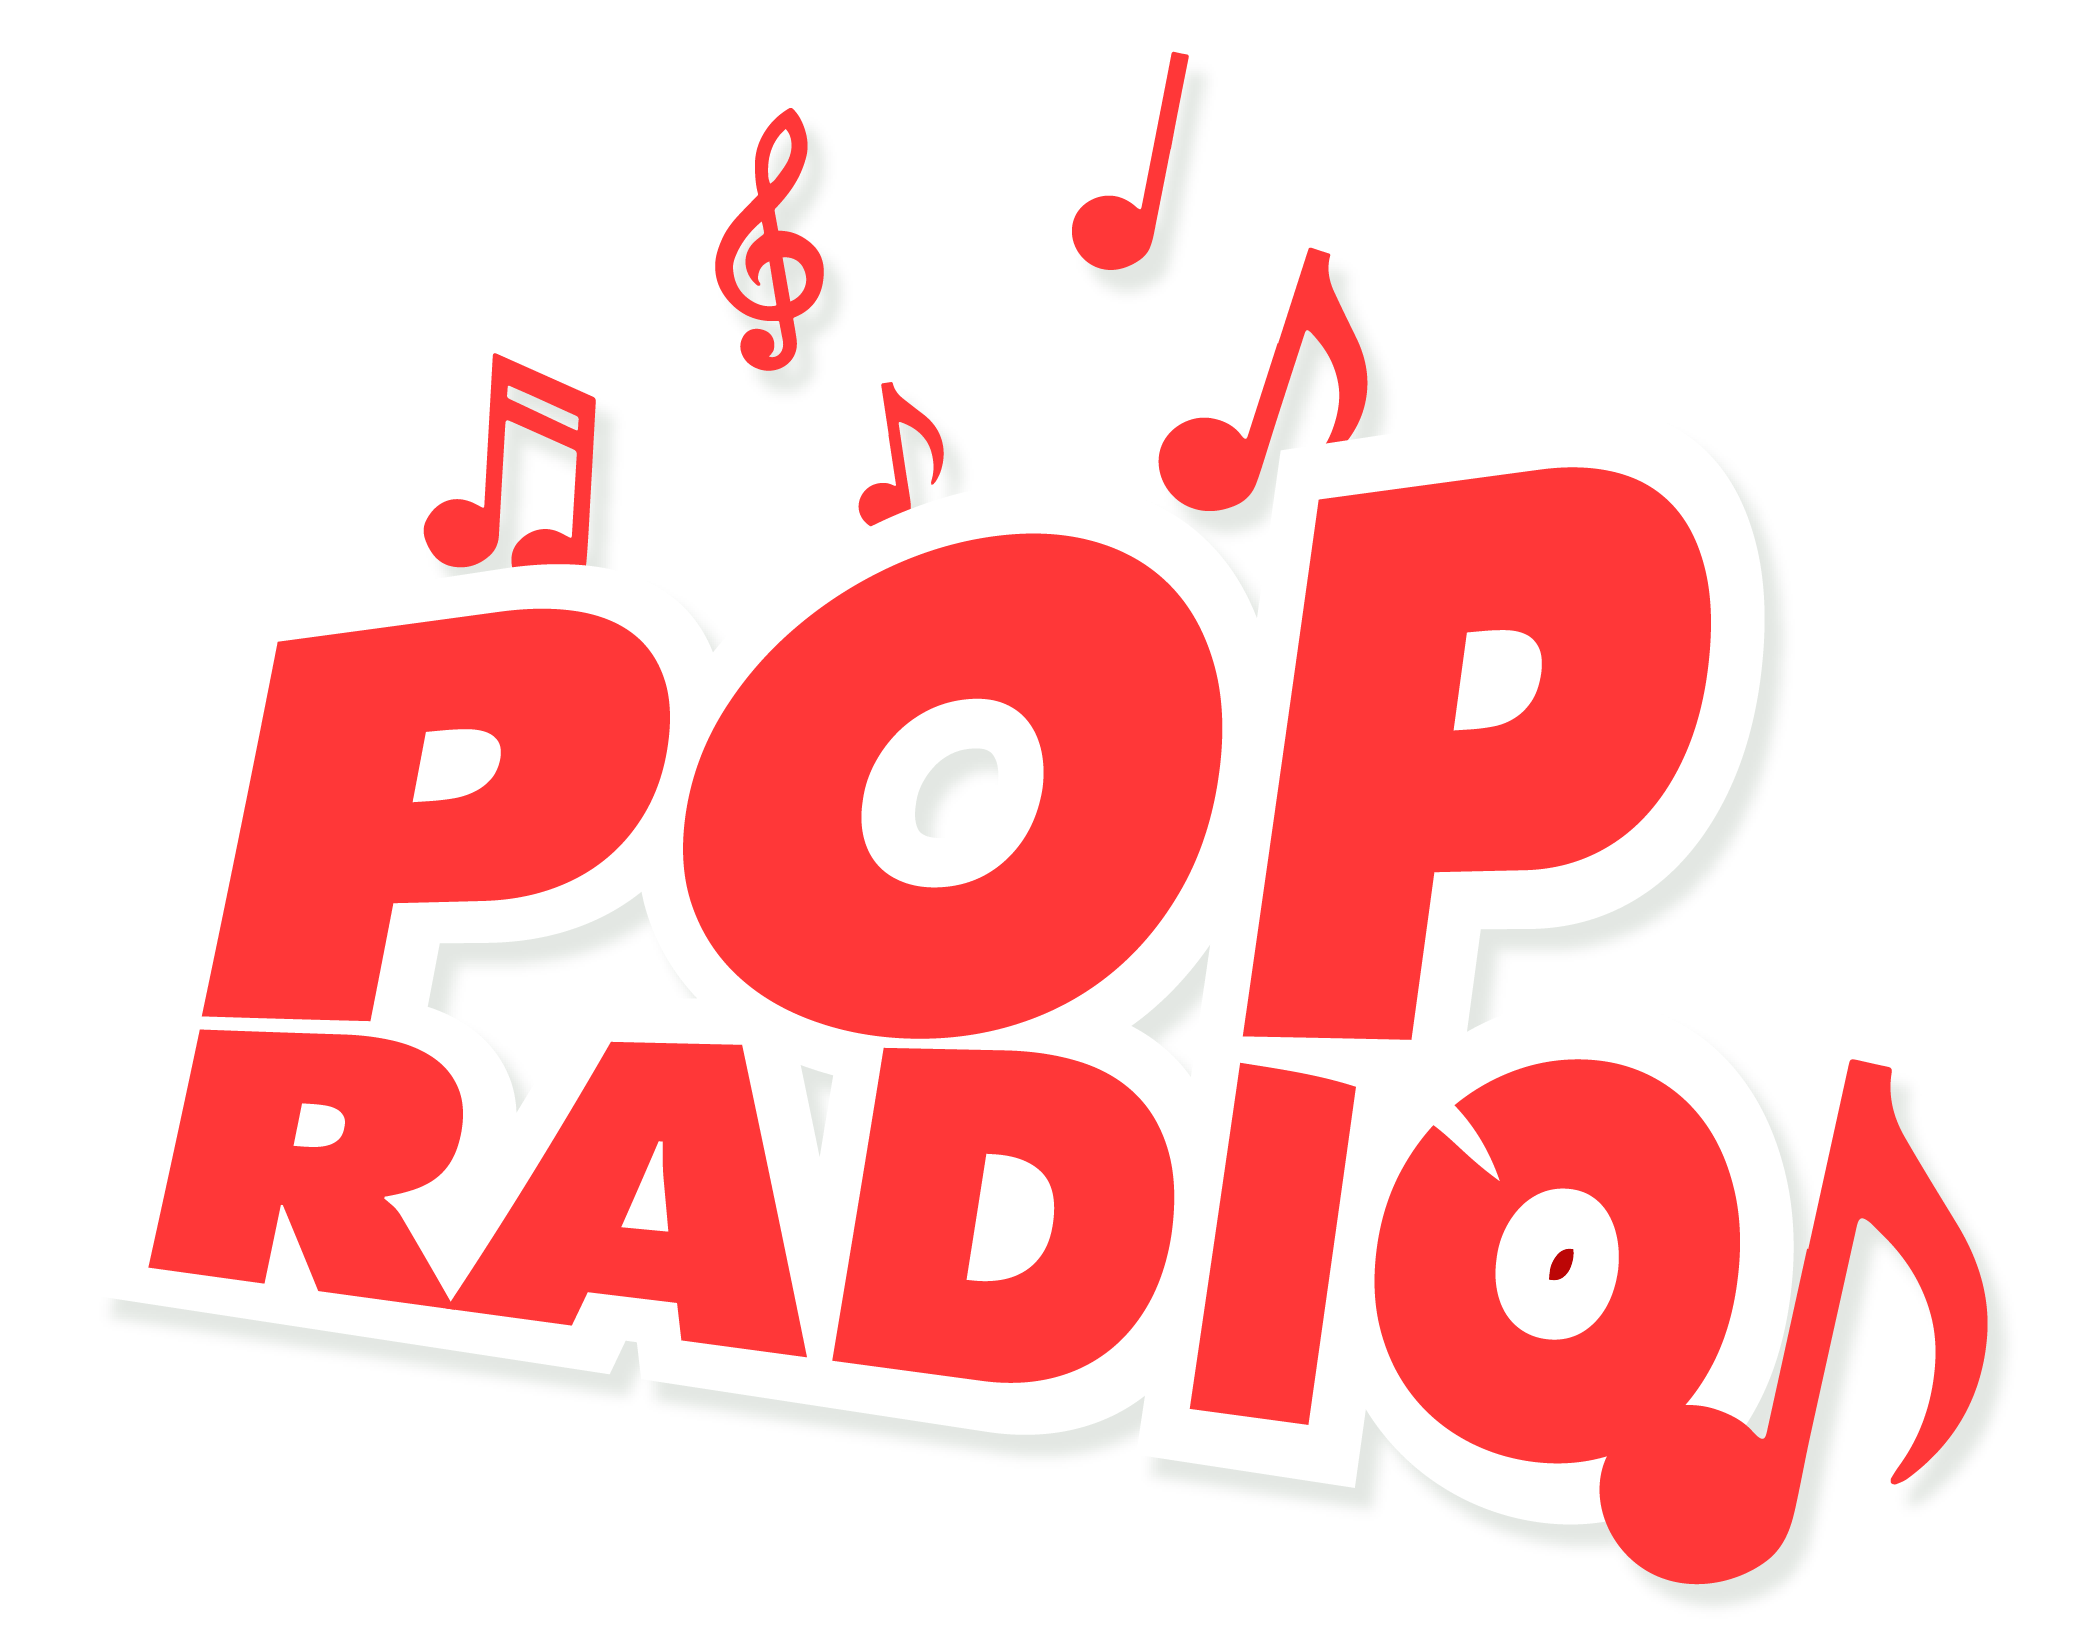 Popradio-nu-logo-2021_Tekengebied 1 kopie